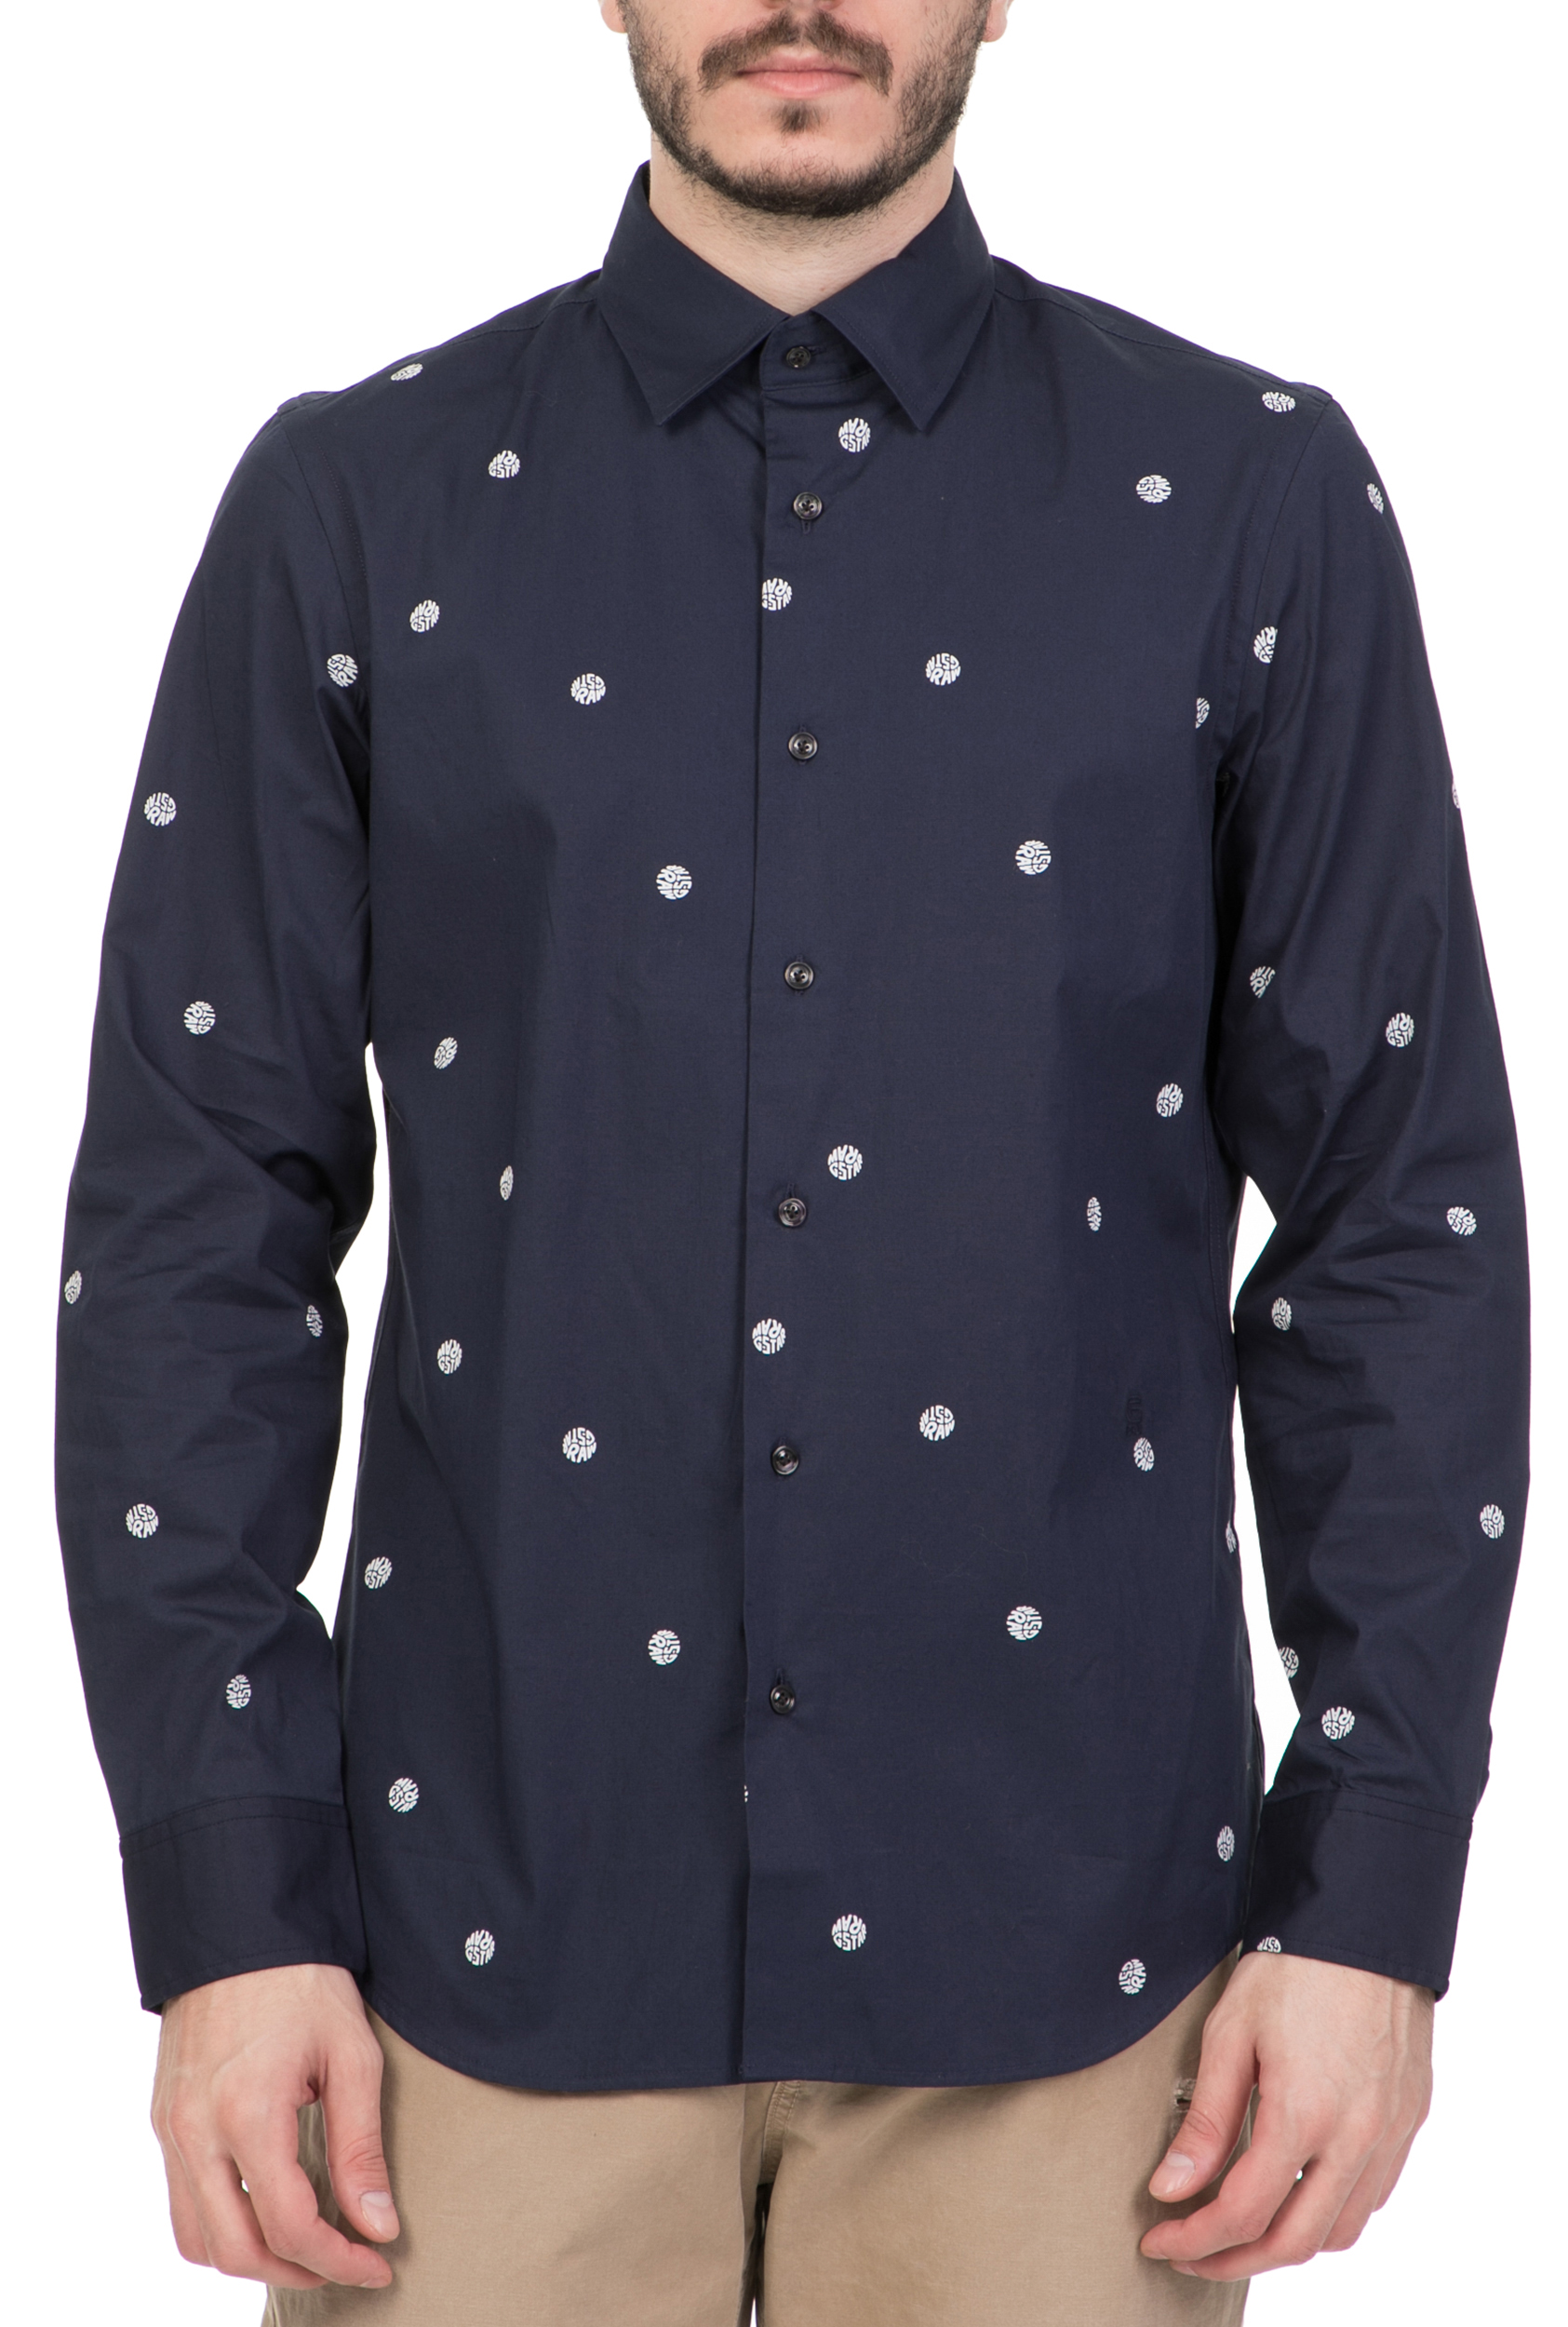 Ανδρικά/Ρούχα/Πουκάμισα/Μακρυμάνικα G-STAR RAW - Ανδρικό μακρυμάνικο πουκάμισο G-STAR RAW CORE μπλε